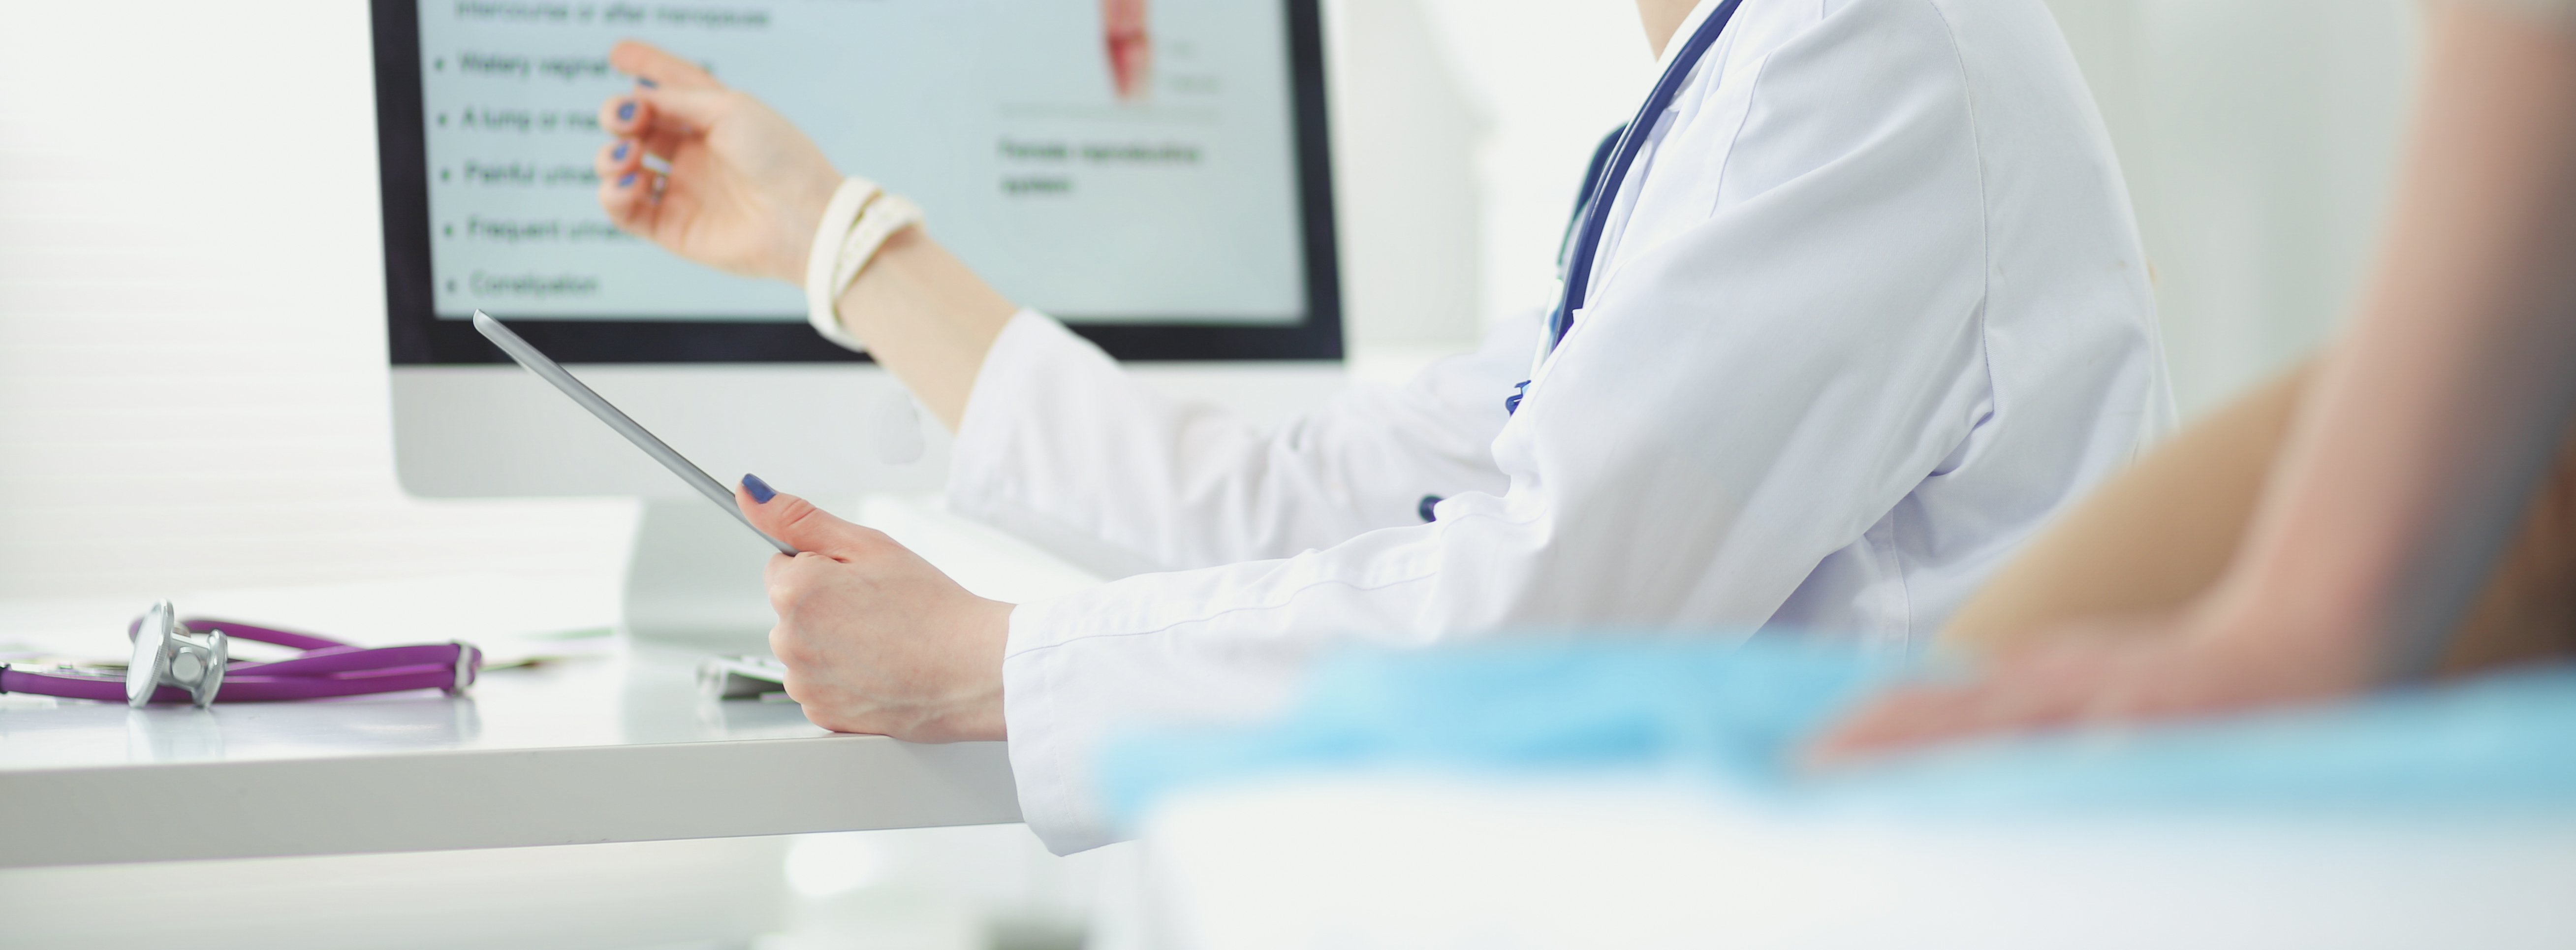 Medico realizando consulta. | Foto: Shutterstock